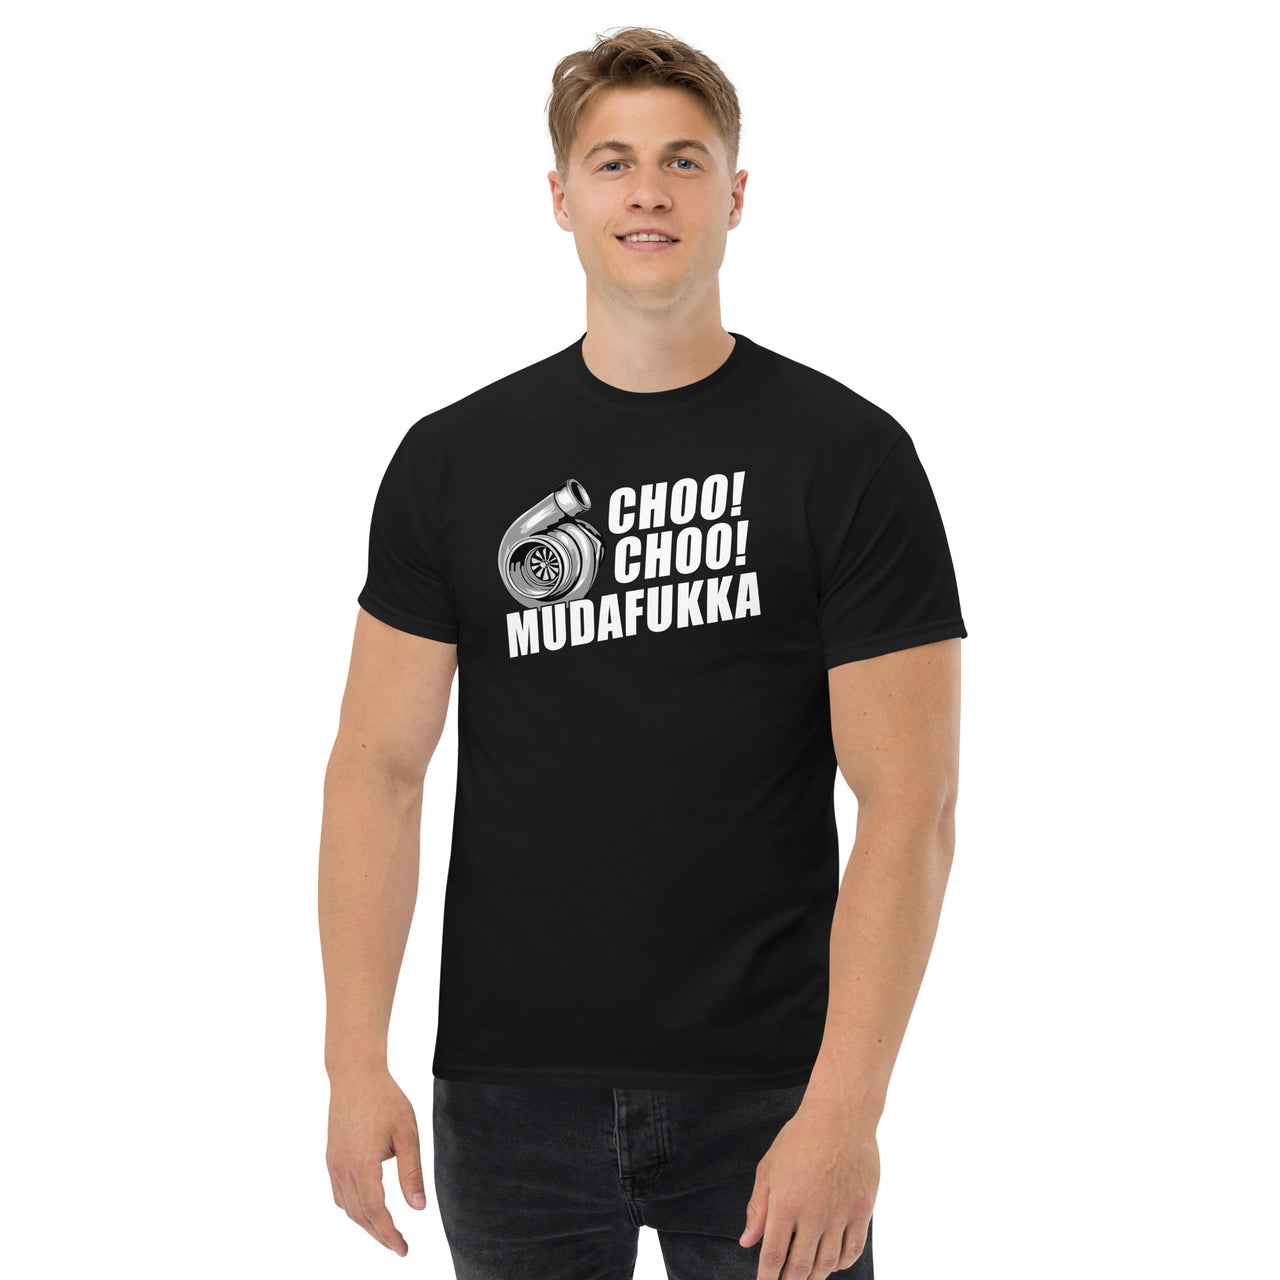 Funny Shirt For Car Guy - Choo Choo Mudafukka